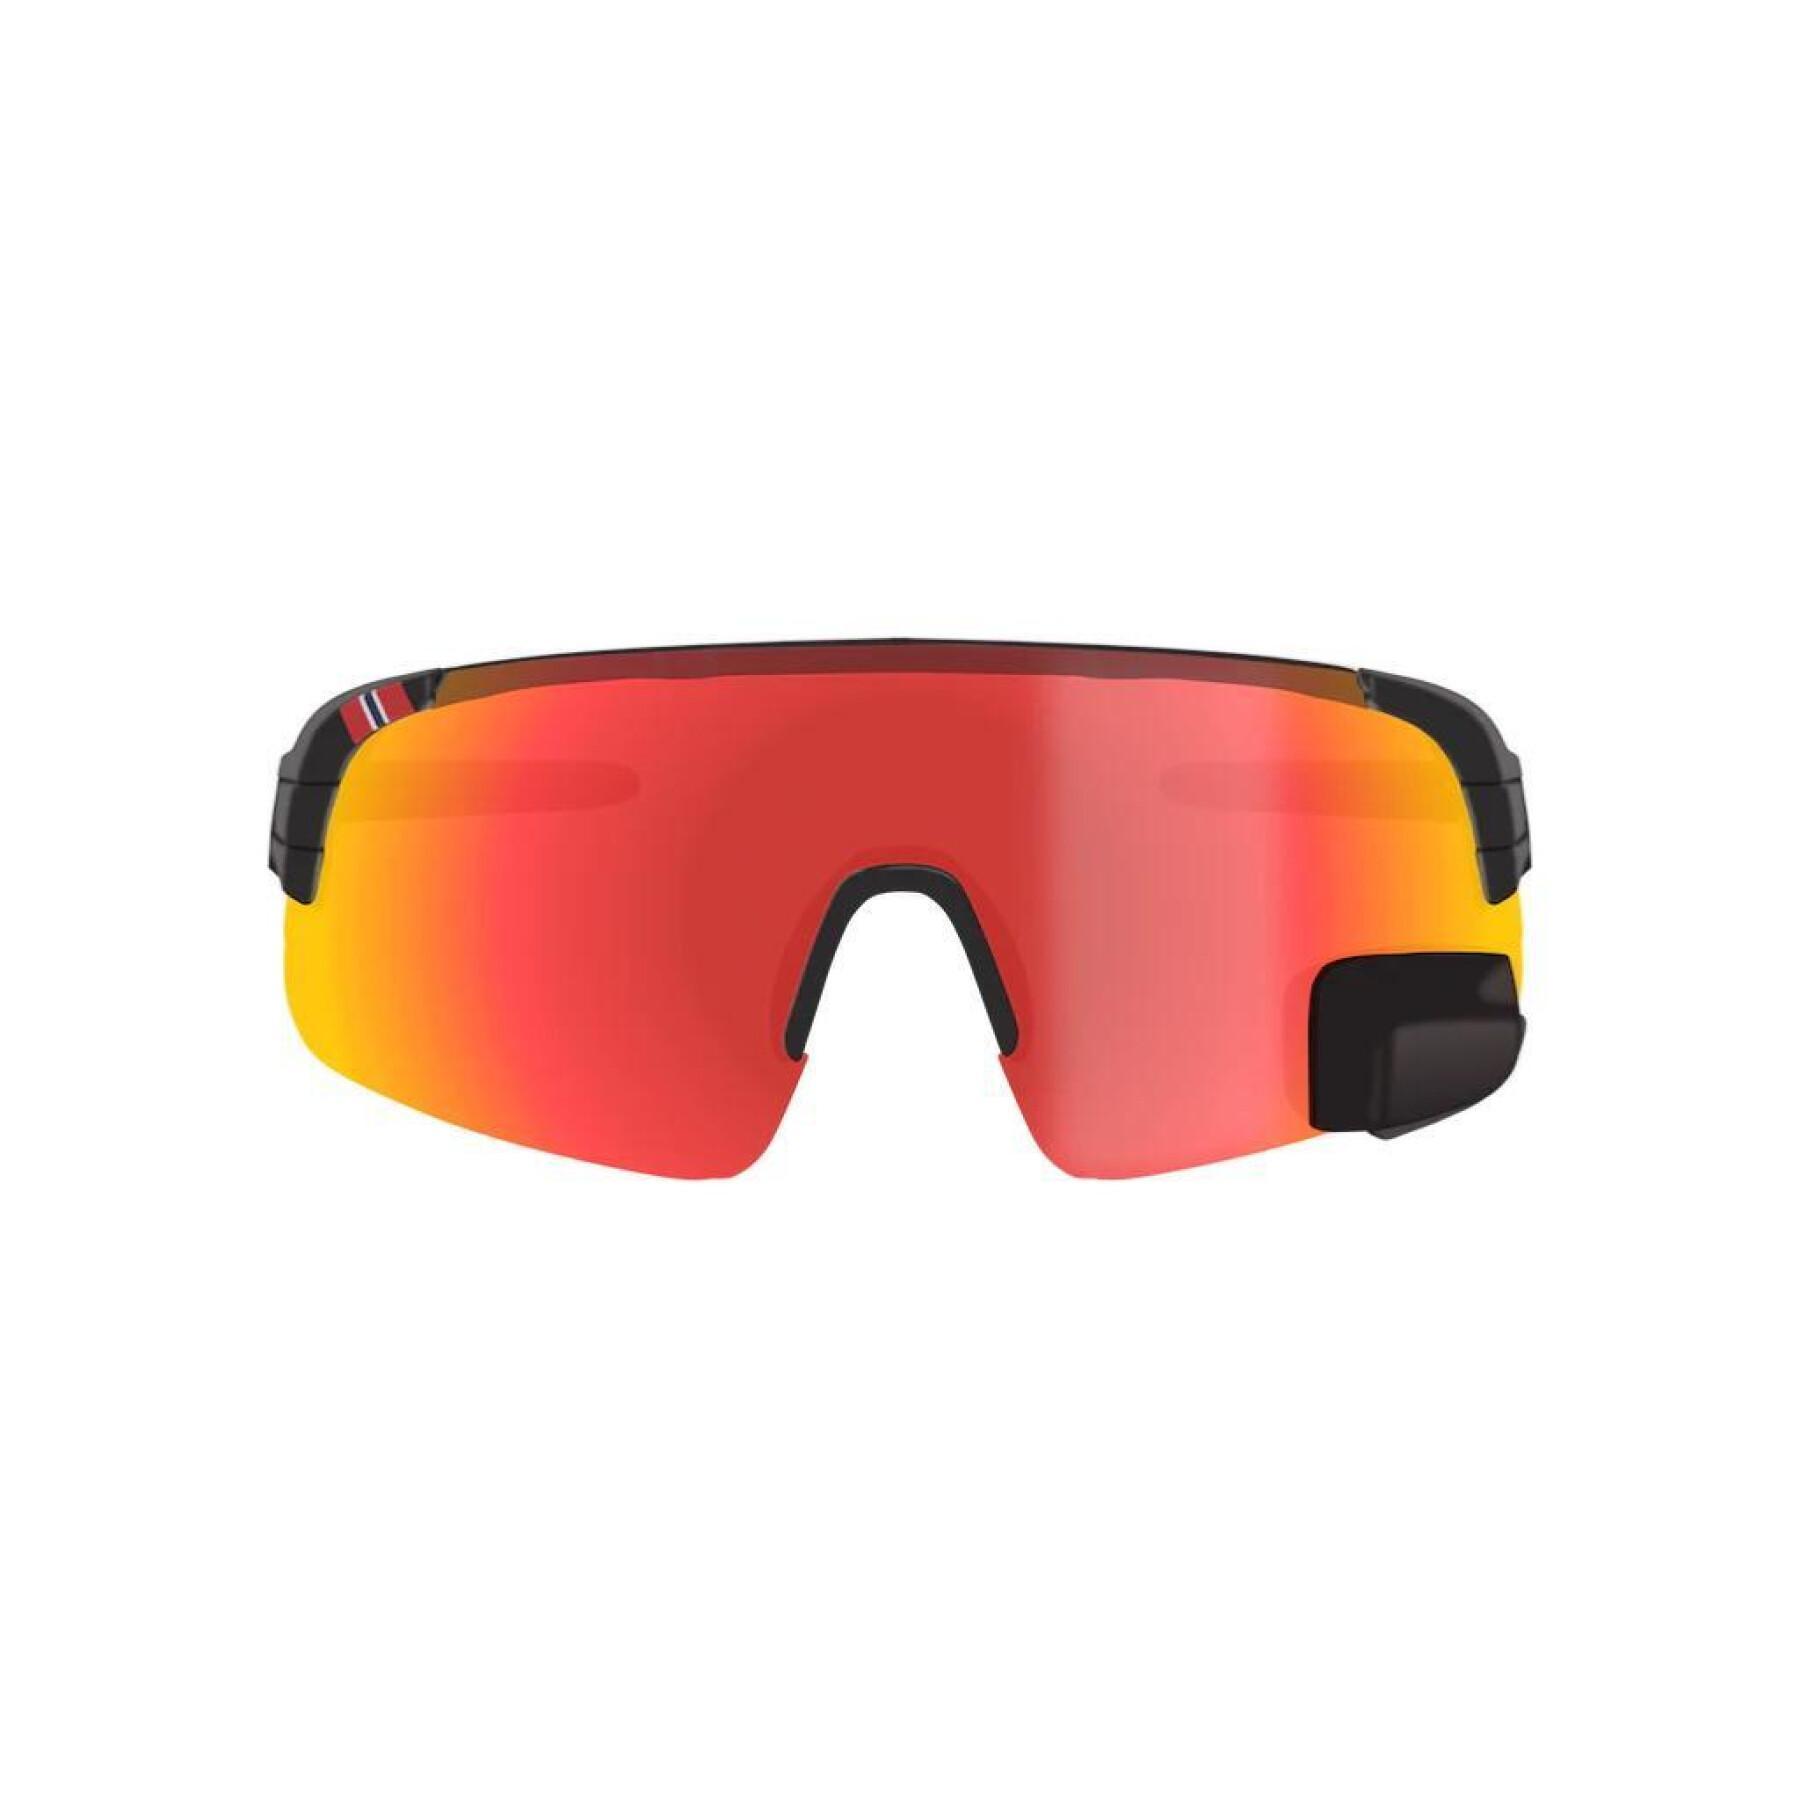 Óculos de proteção retrovisores para bicicletas TriEye Color R